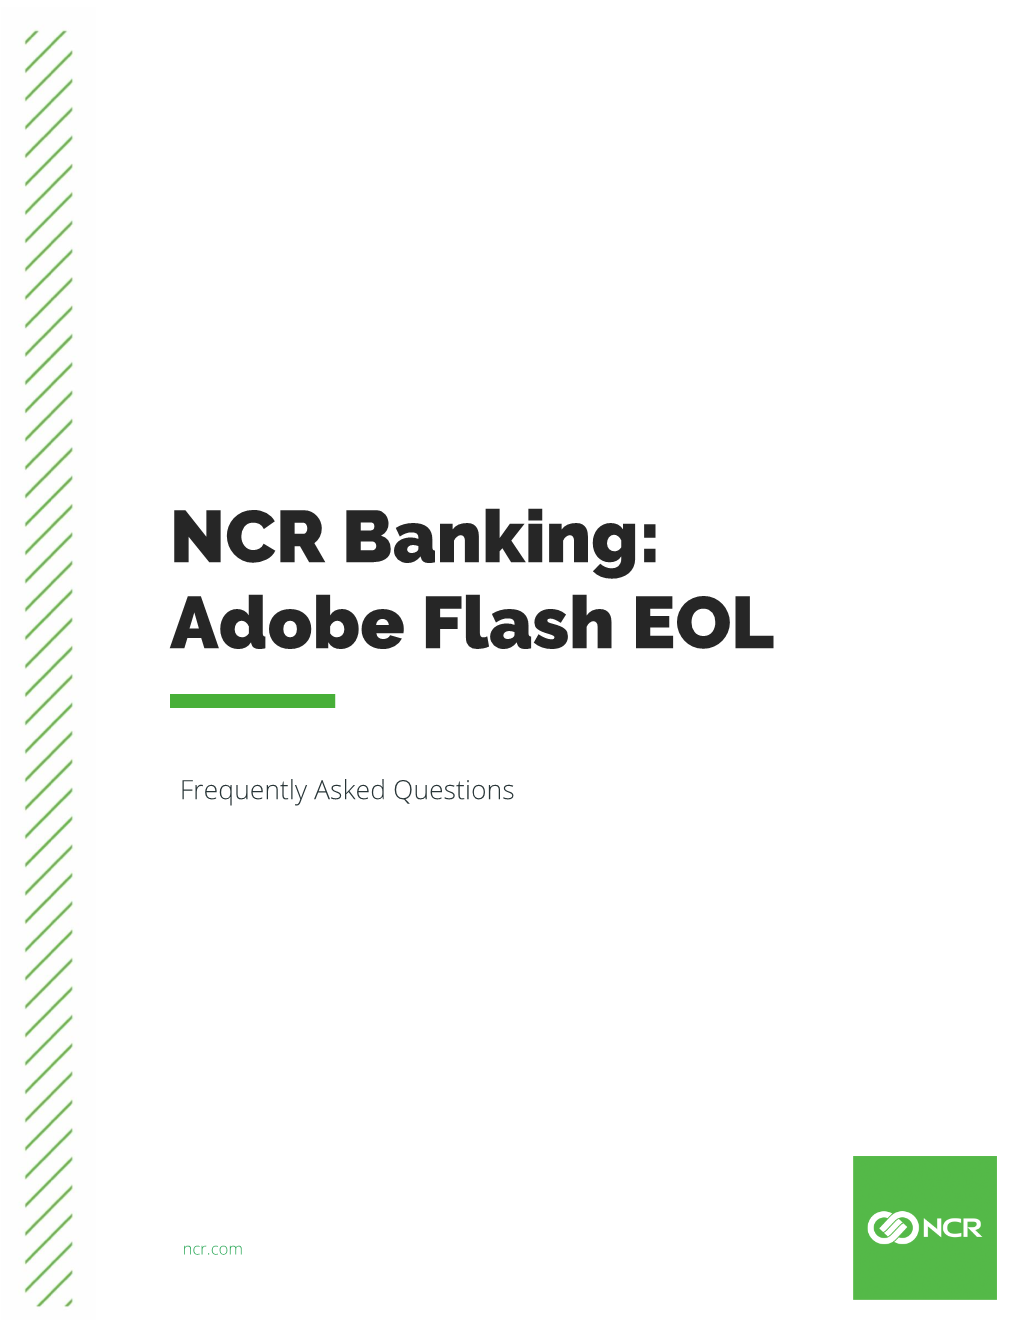 NCR Banking: Adobe Flash